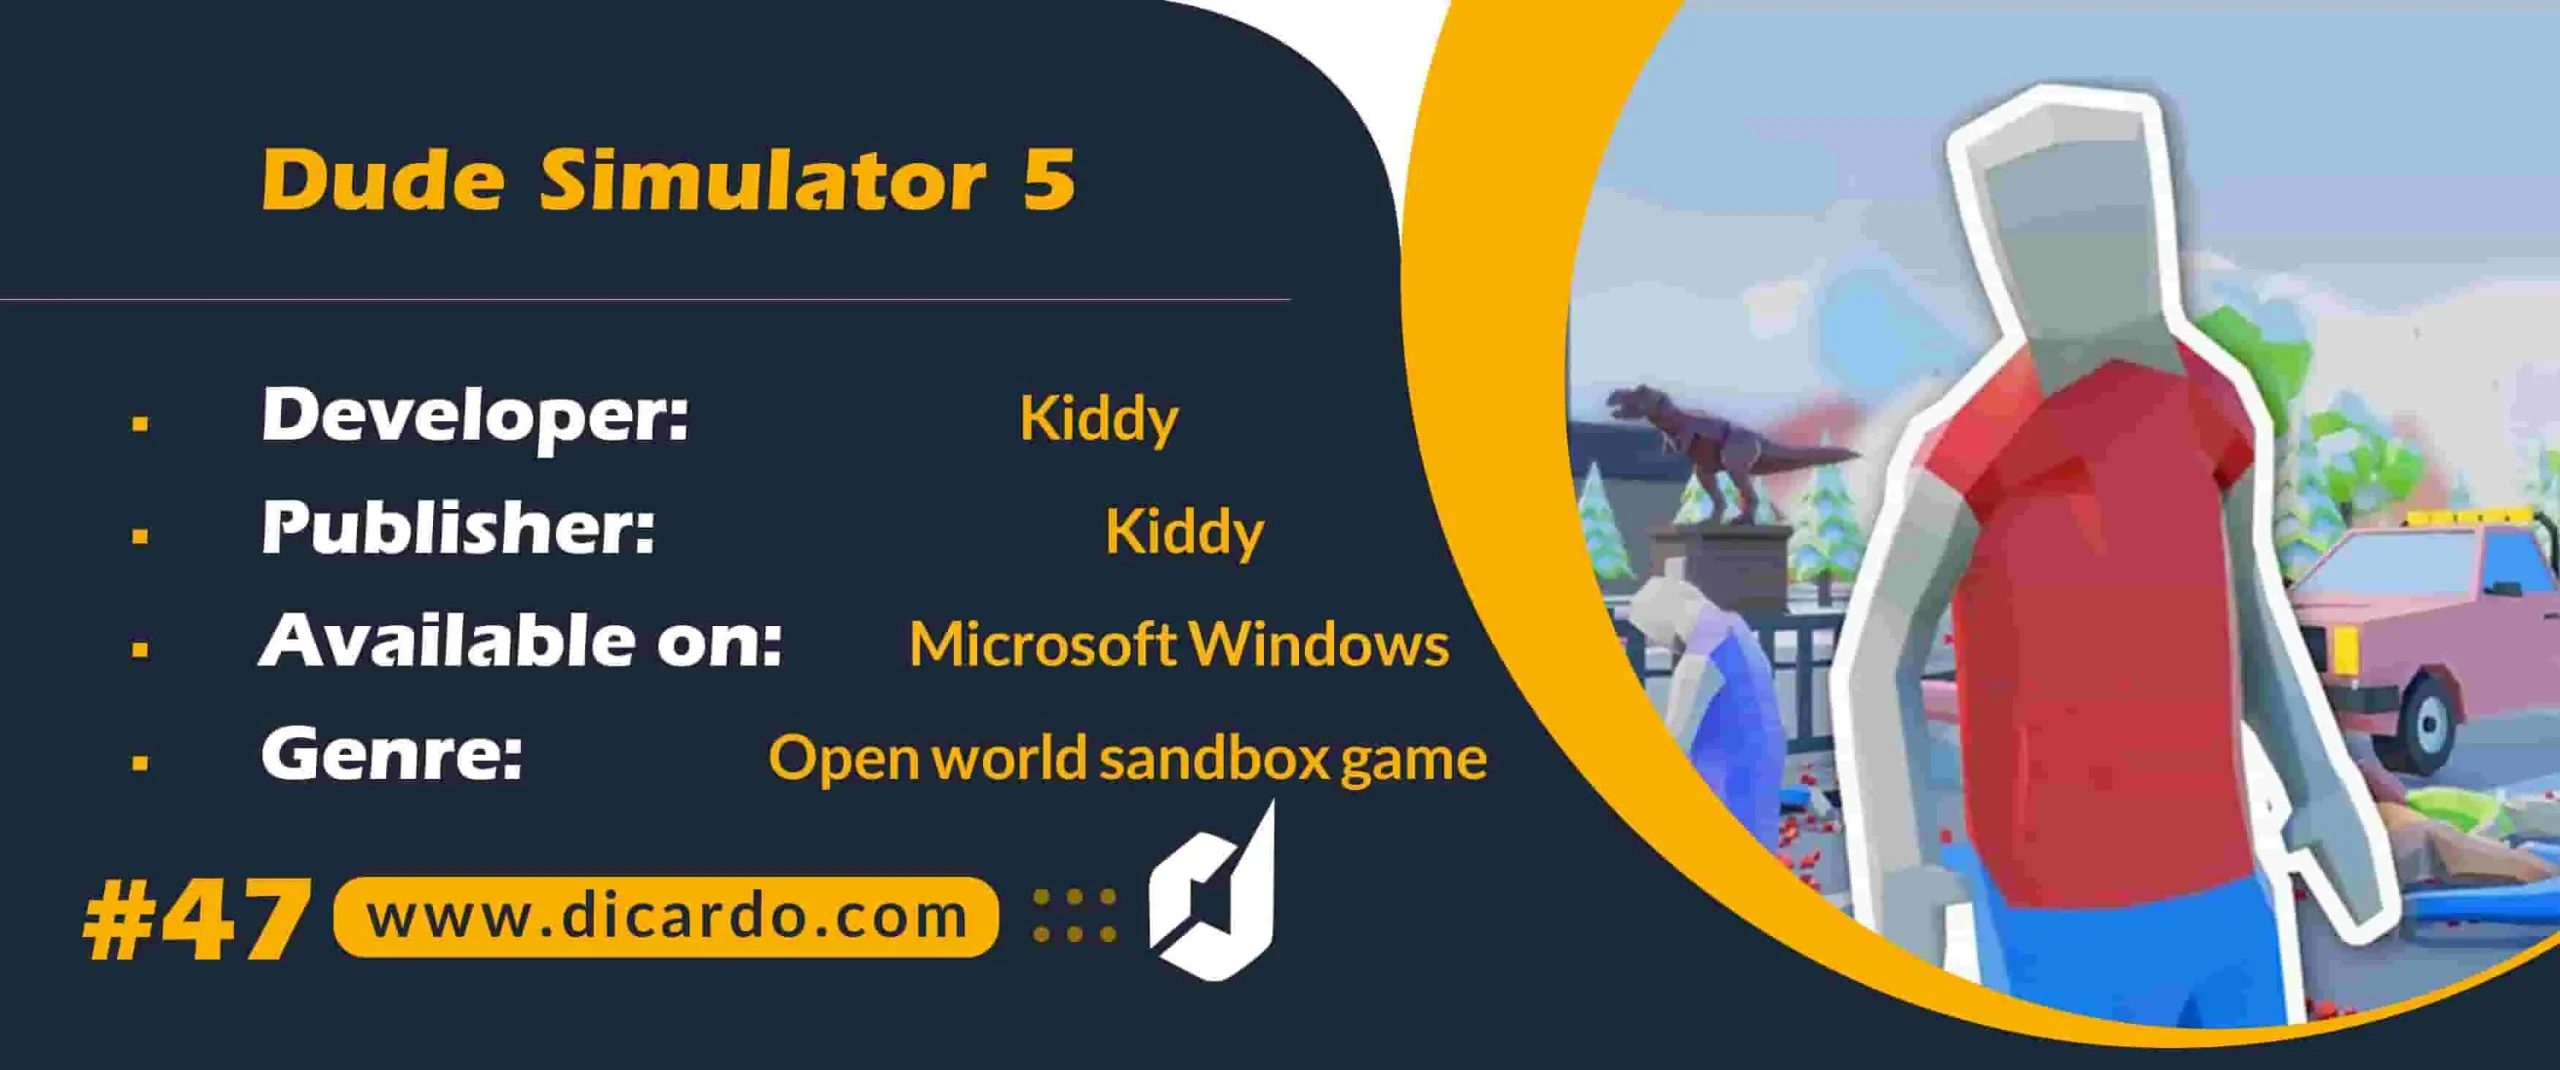 #47 دوود سیمولیشر5 Dude Simulator 5 از بازیهای PC در ژانر sandbox جهان باز